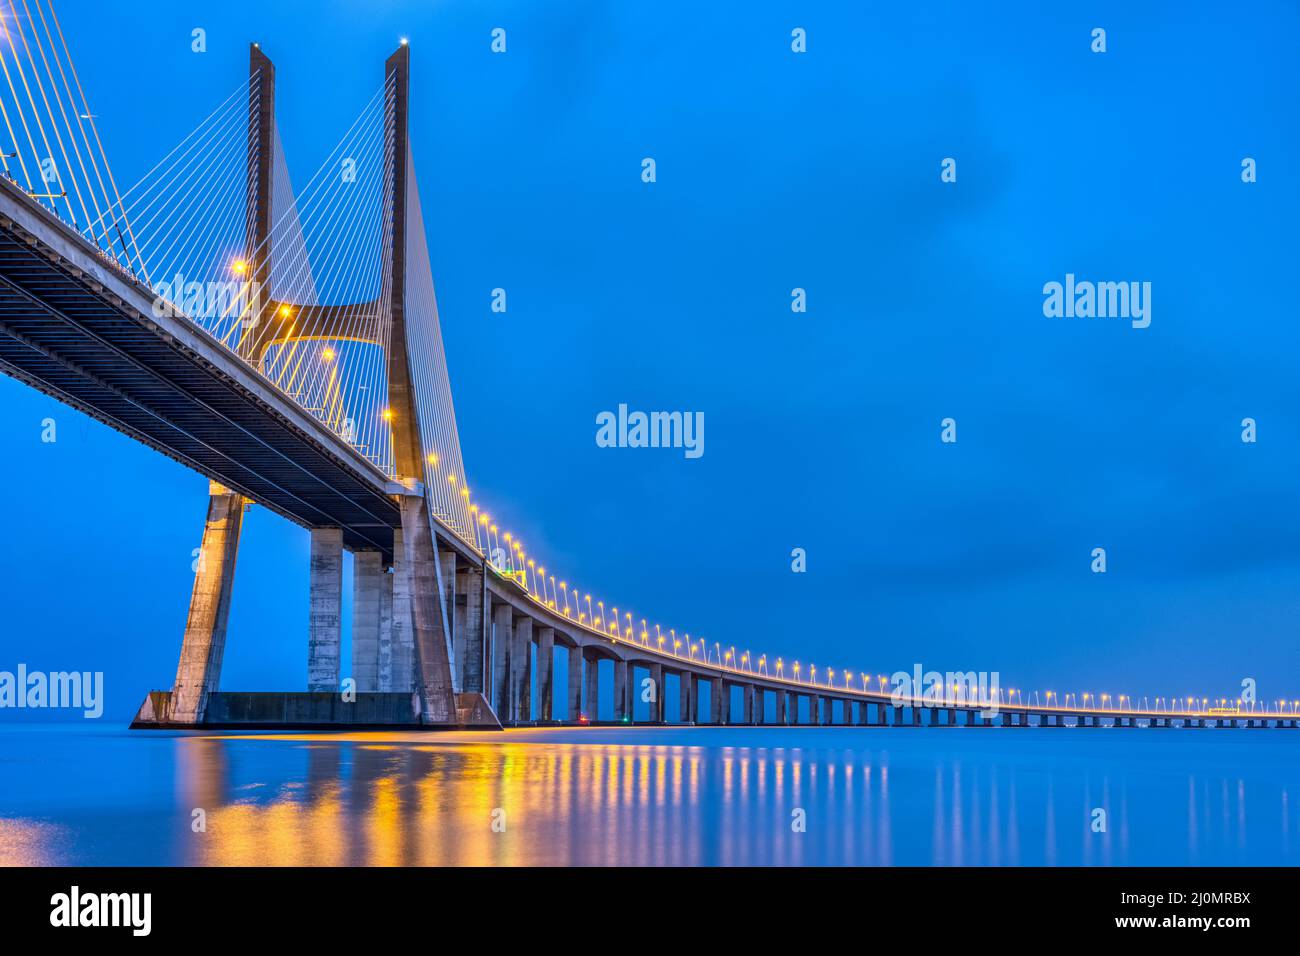 El puente Vasco da Gama cruzando el río Tajo en Lisboa, Portugal, al atardecer Foto de stock